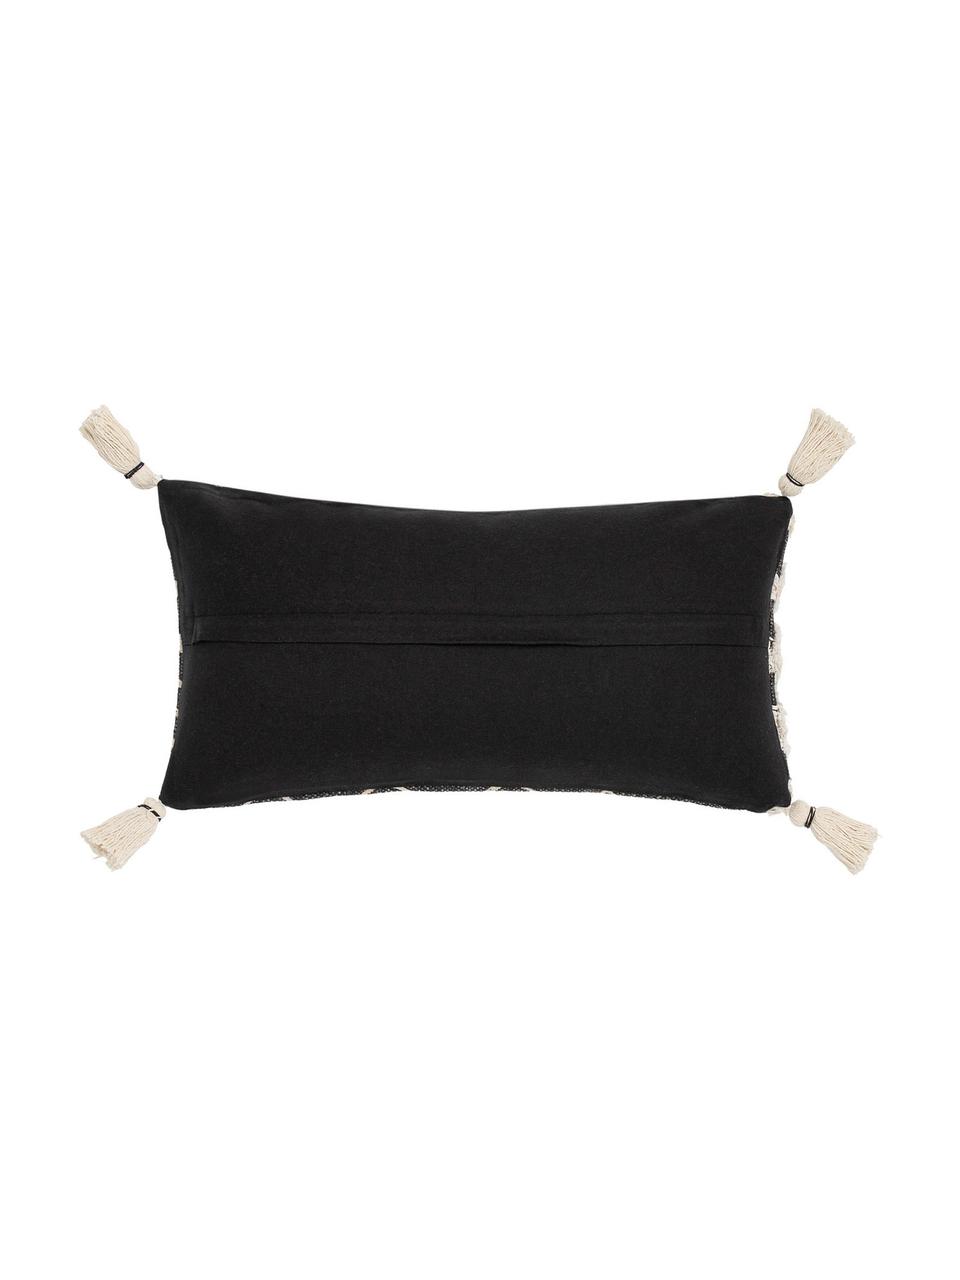 Poszewka na poduszkę z chwostami w stylu boho Boa, 100% bawełna, Czarny, biały, S 30 x D 60 cm